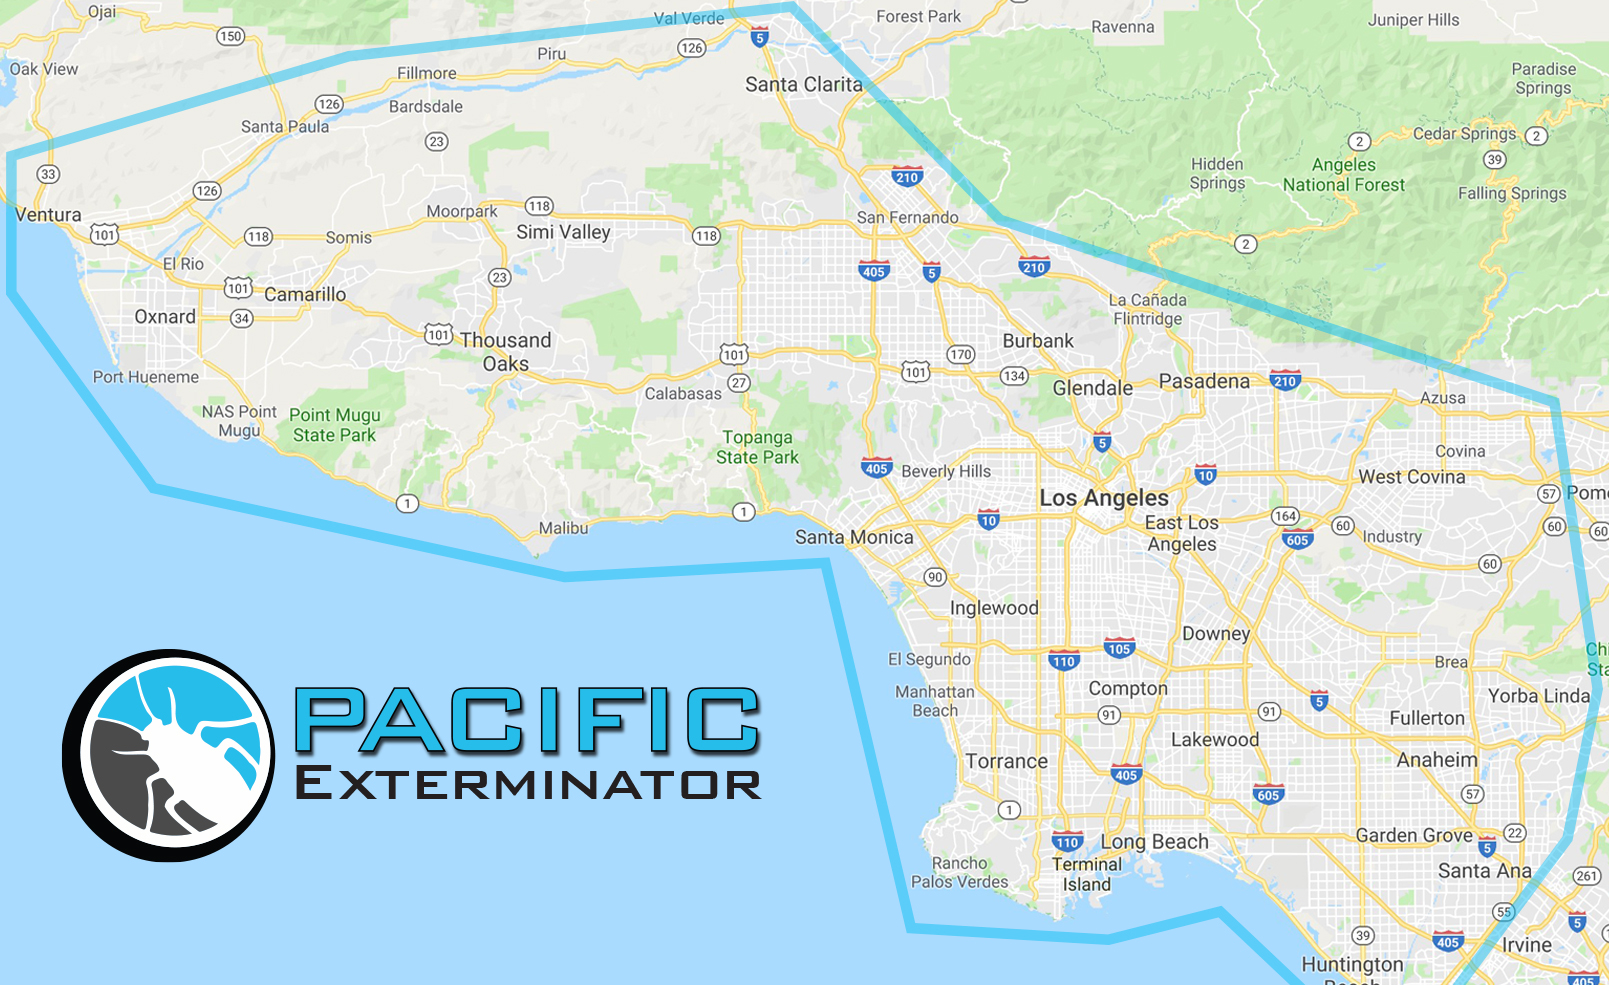 Pacific Exterminator service area map